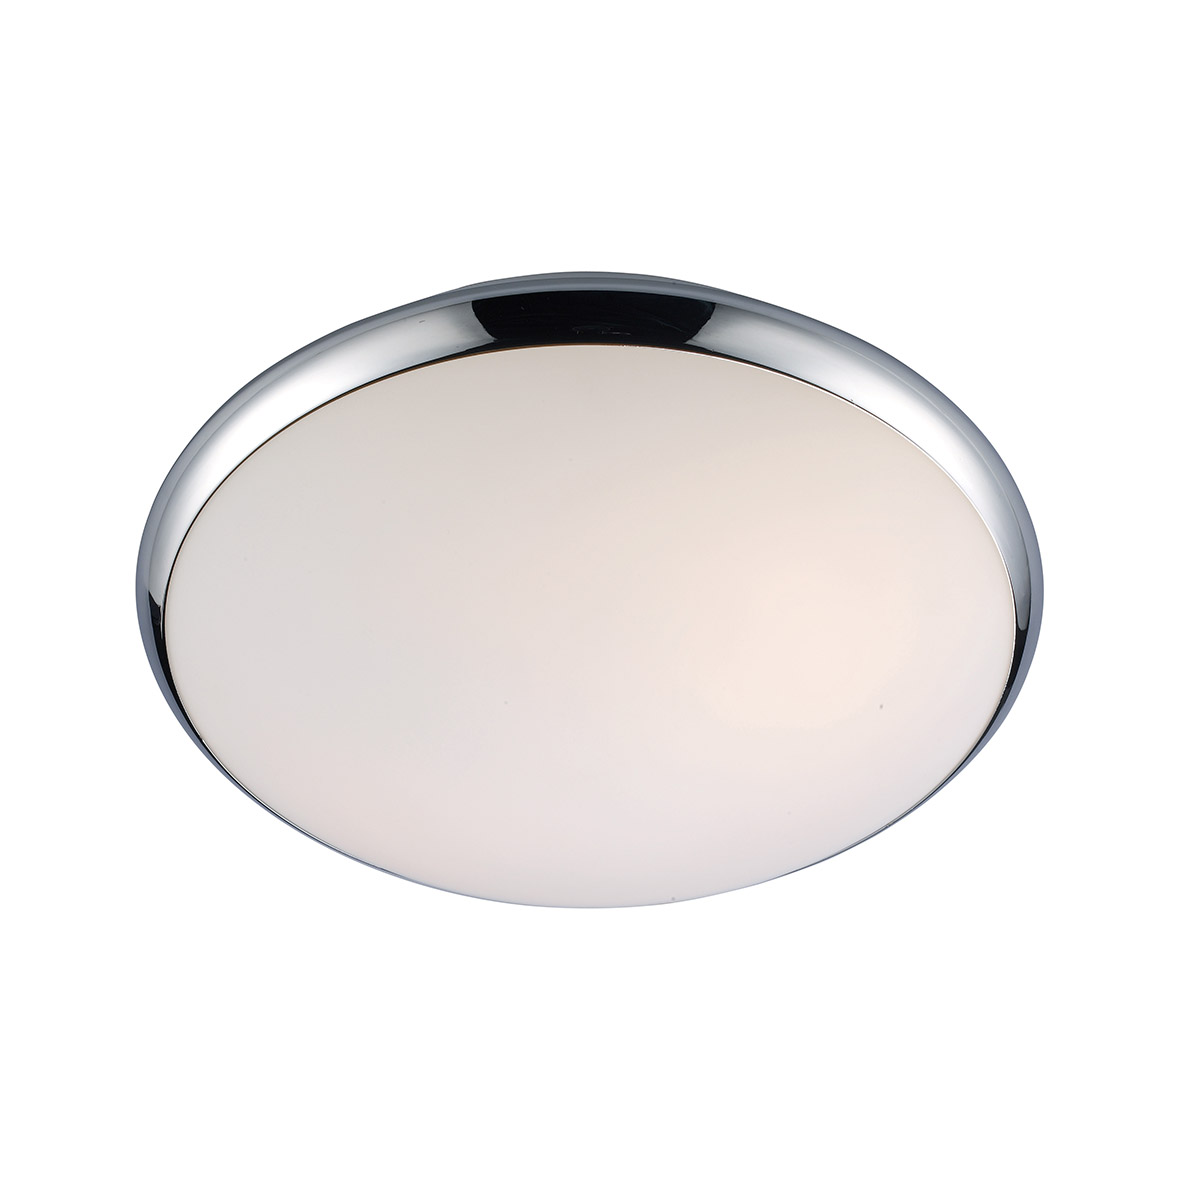 Italux Kreo 5005-S plafon lampa sufitowa 1x60W E27 chrom/ biały